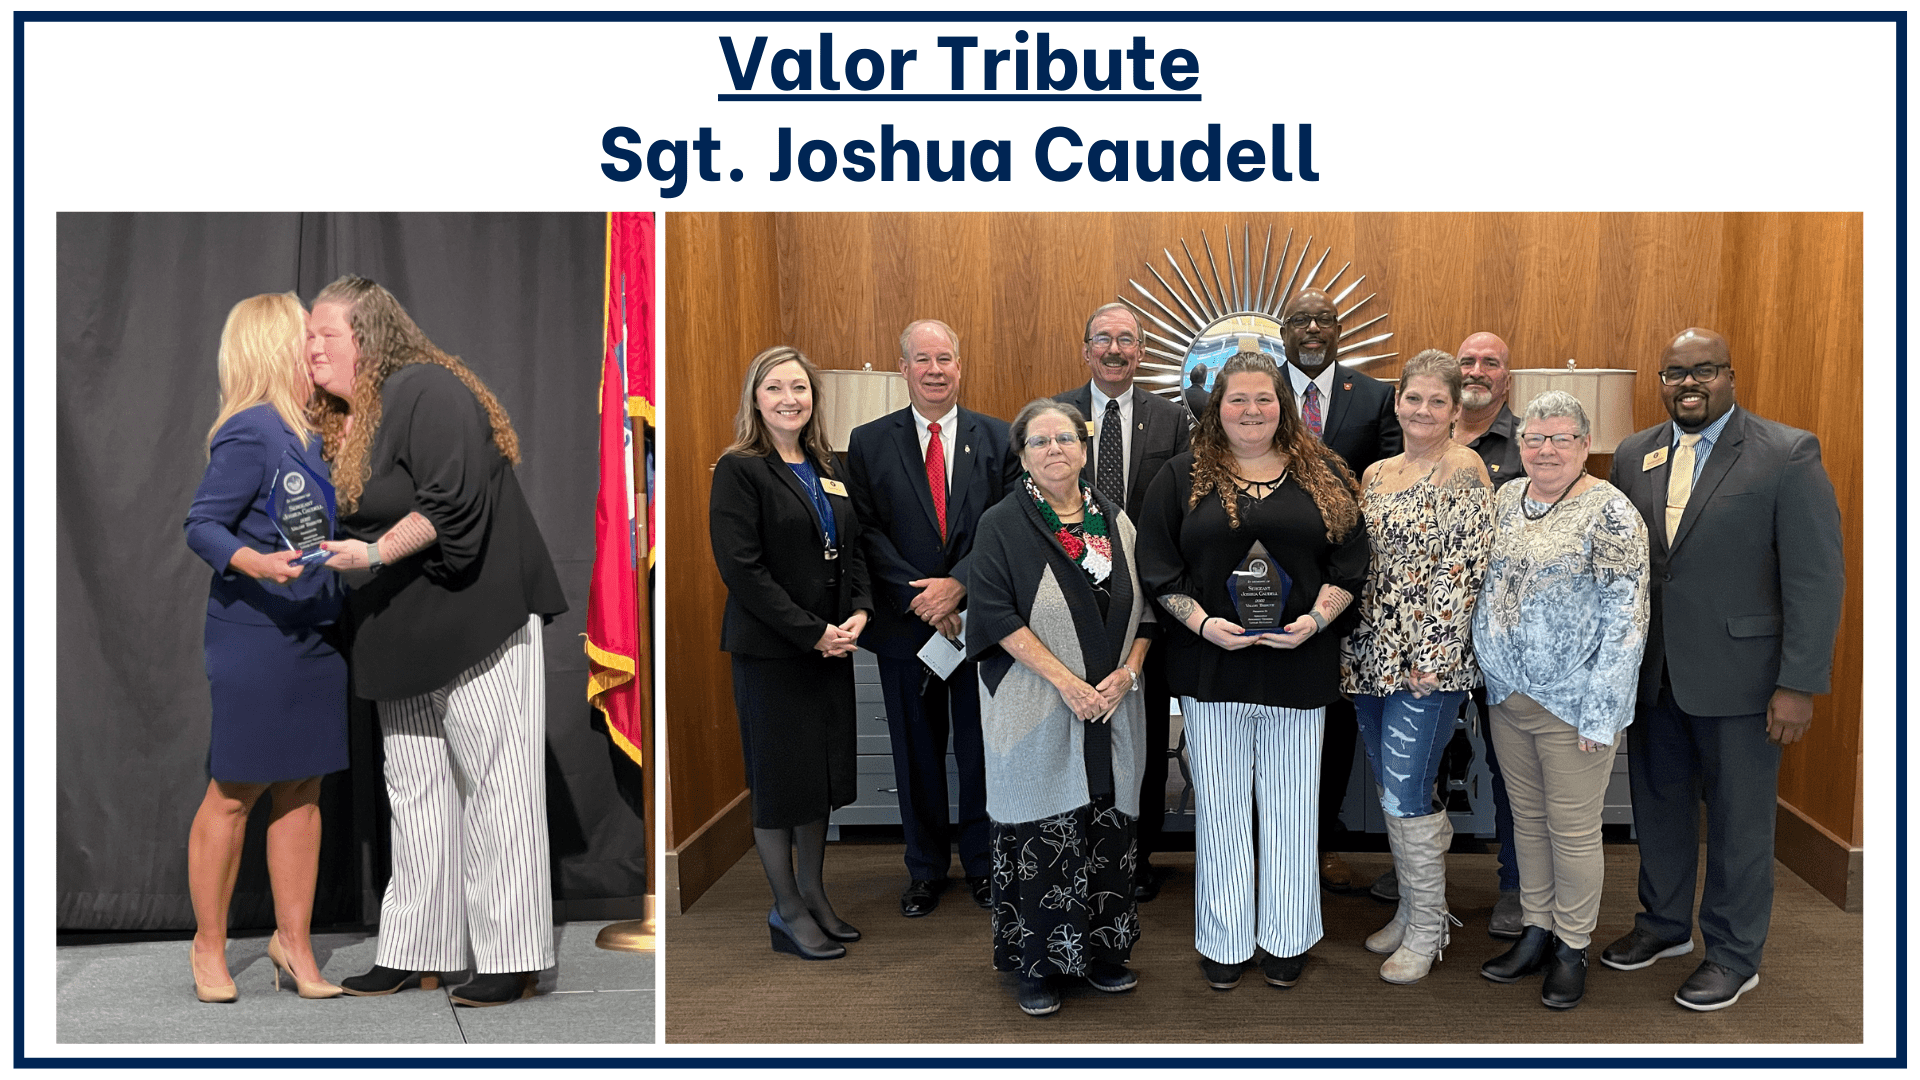 Valor - Sgt. Joshua Caudell 2